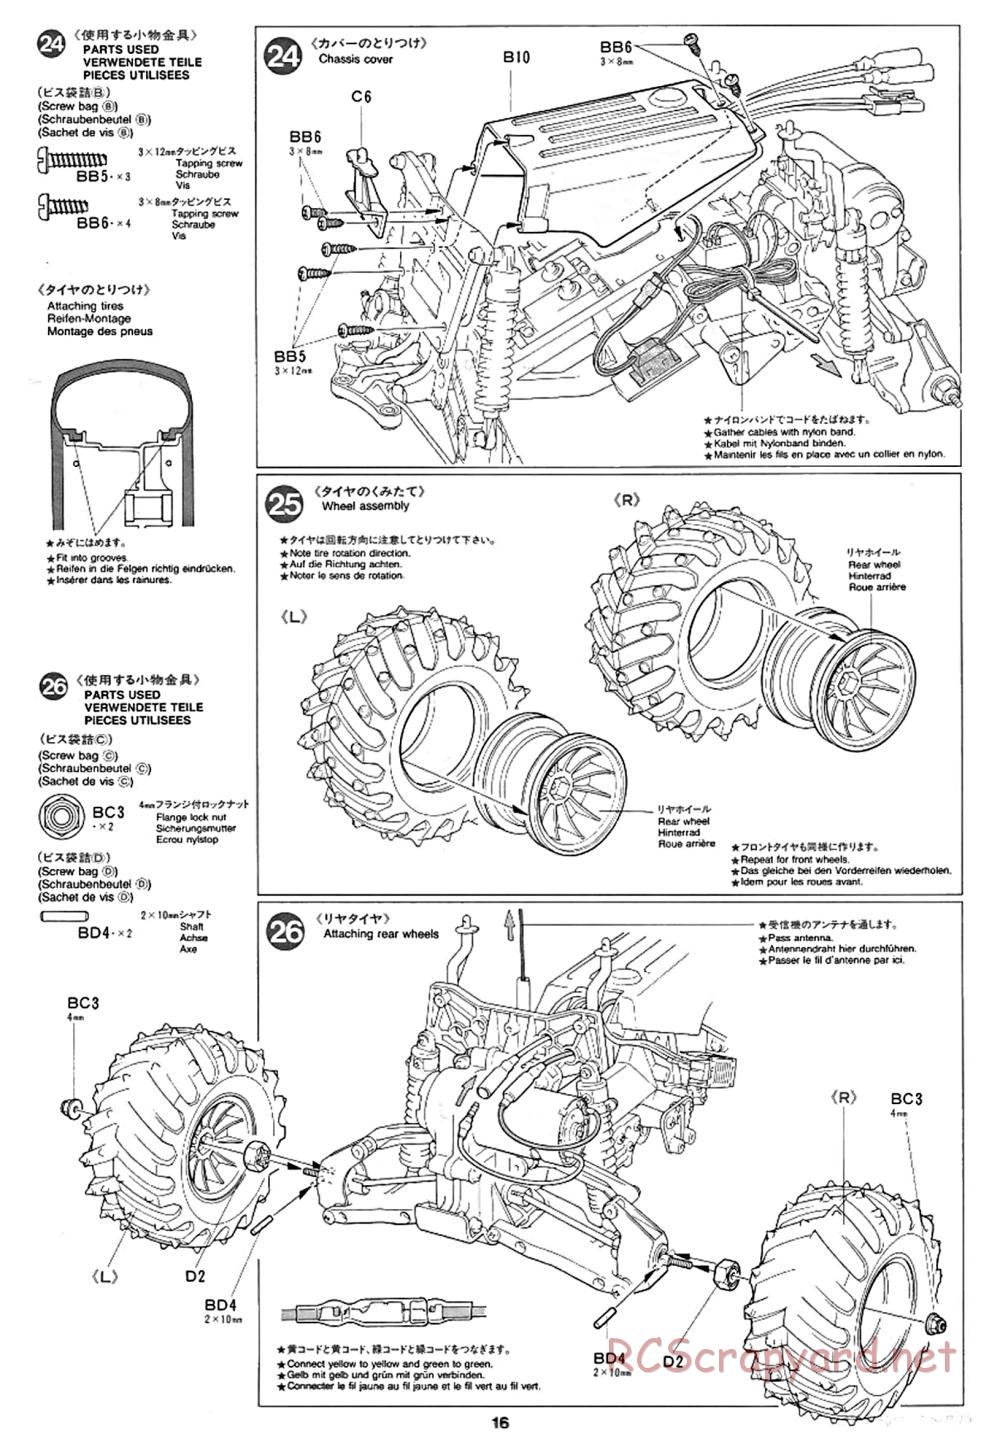 Tamiya - Super Blackfoot Chassis - Manual - Page 16